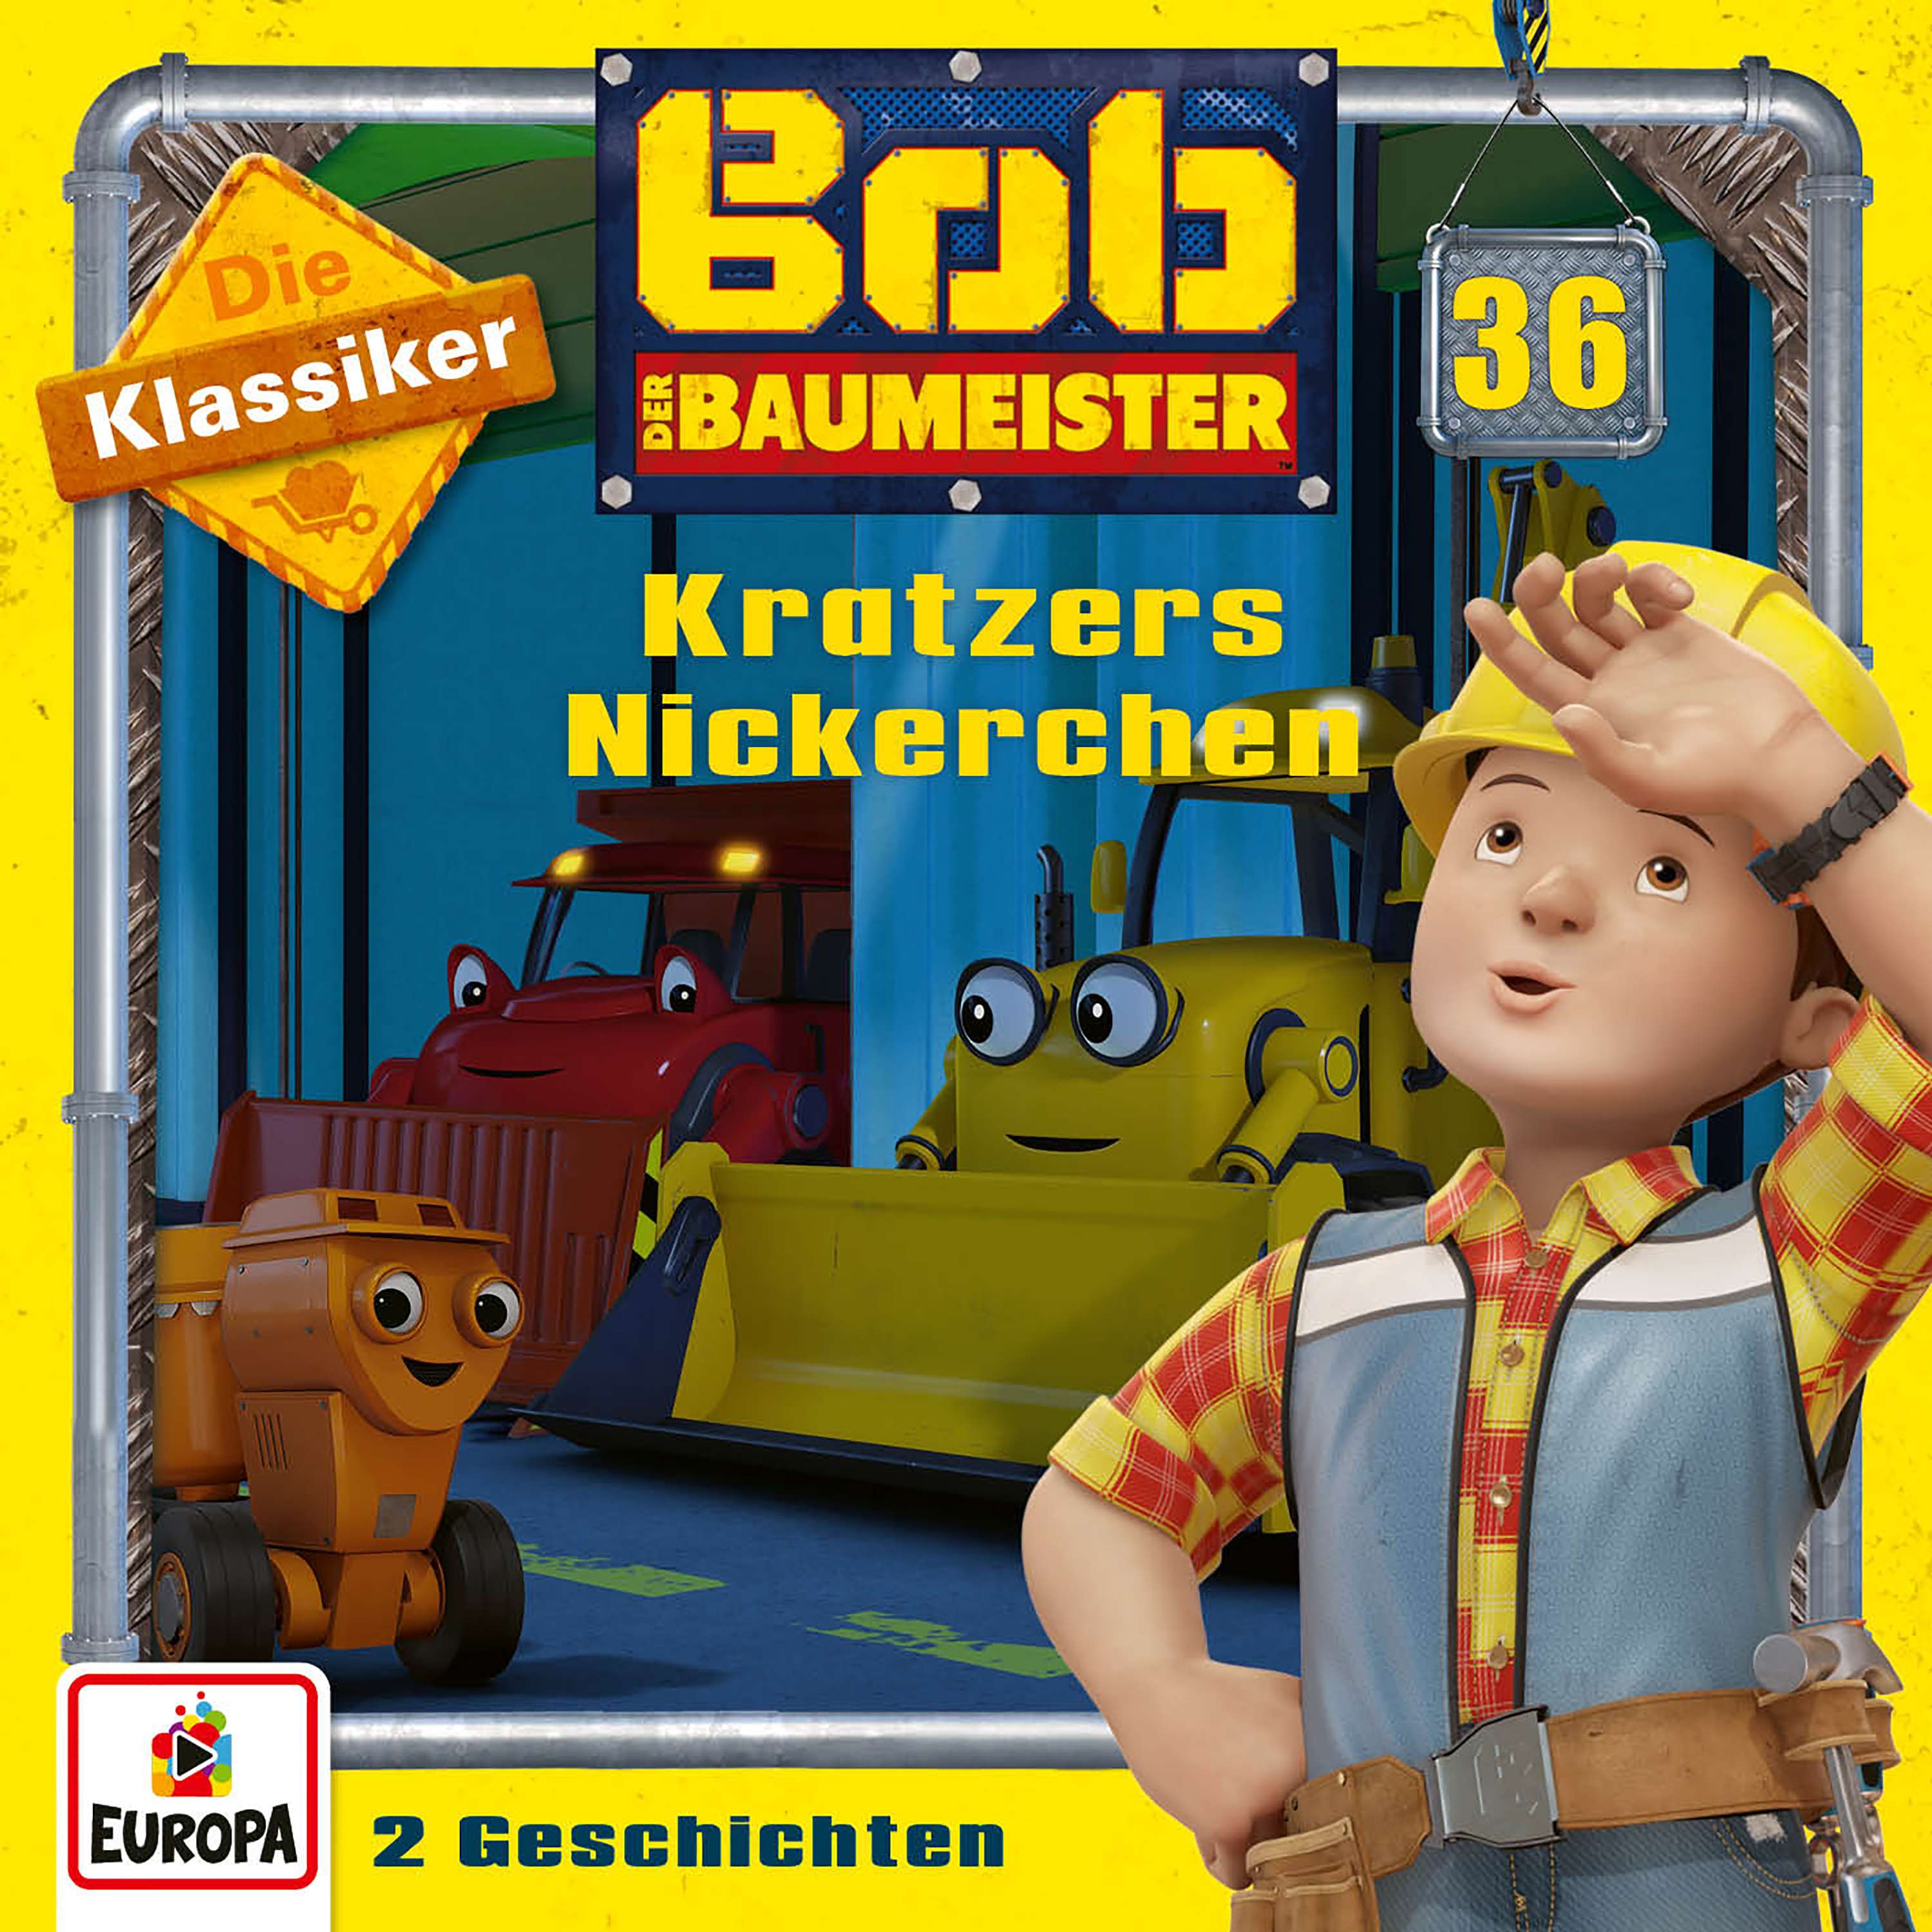 Bob der Baumeister: Kratzers Nickerchen (Die Klassiker)